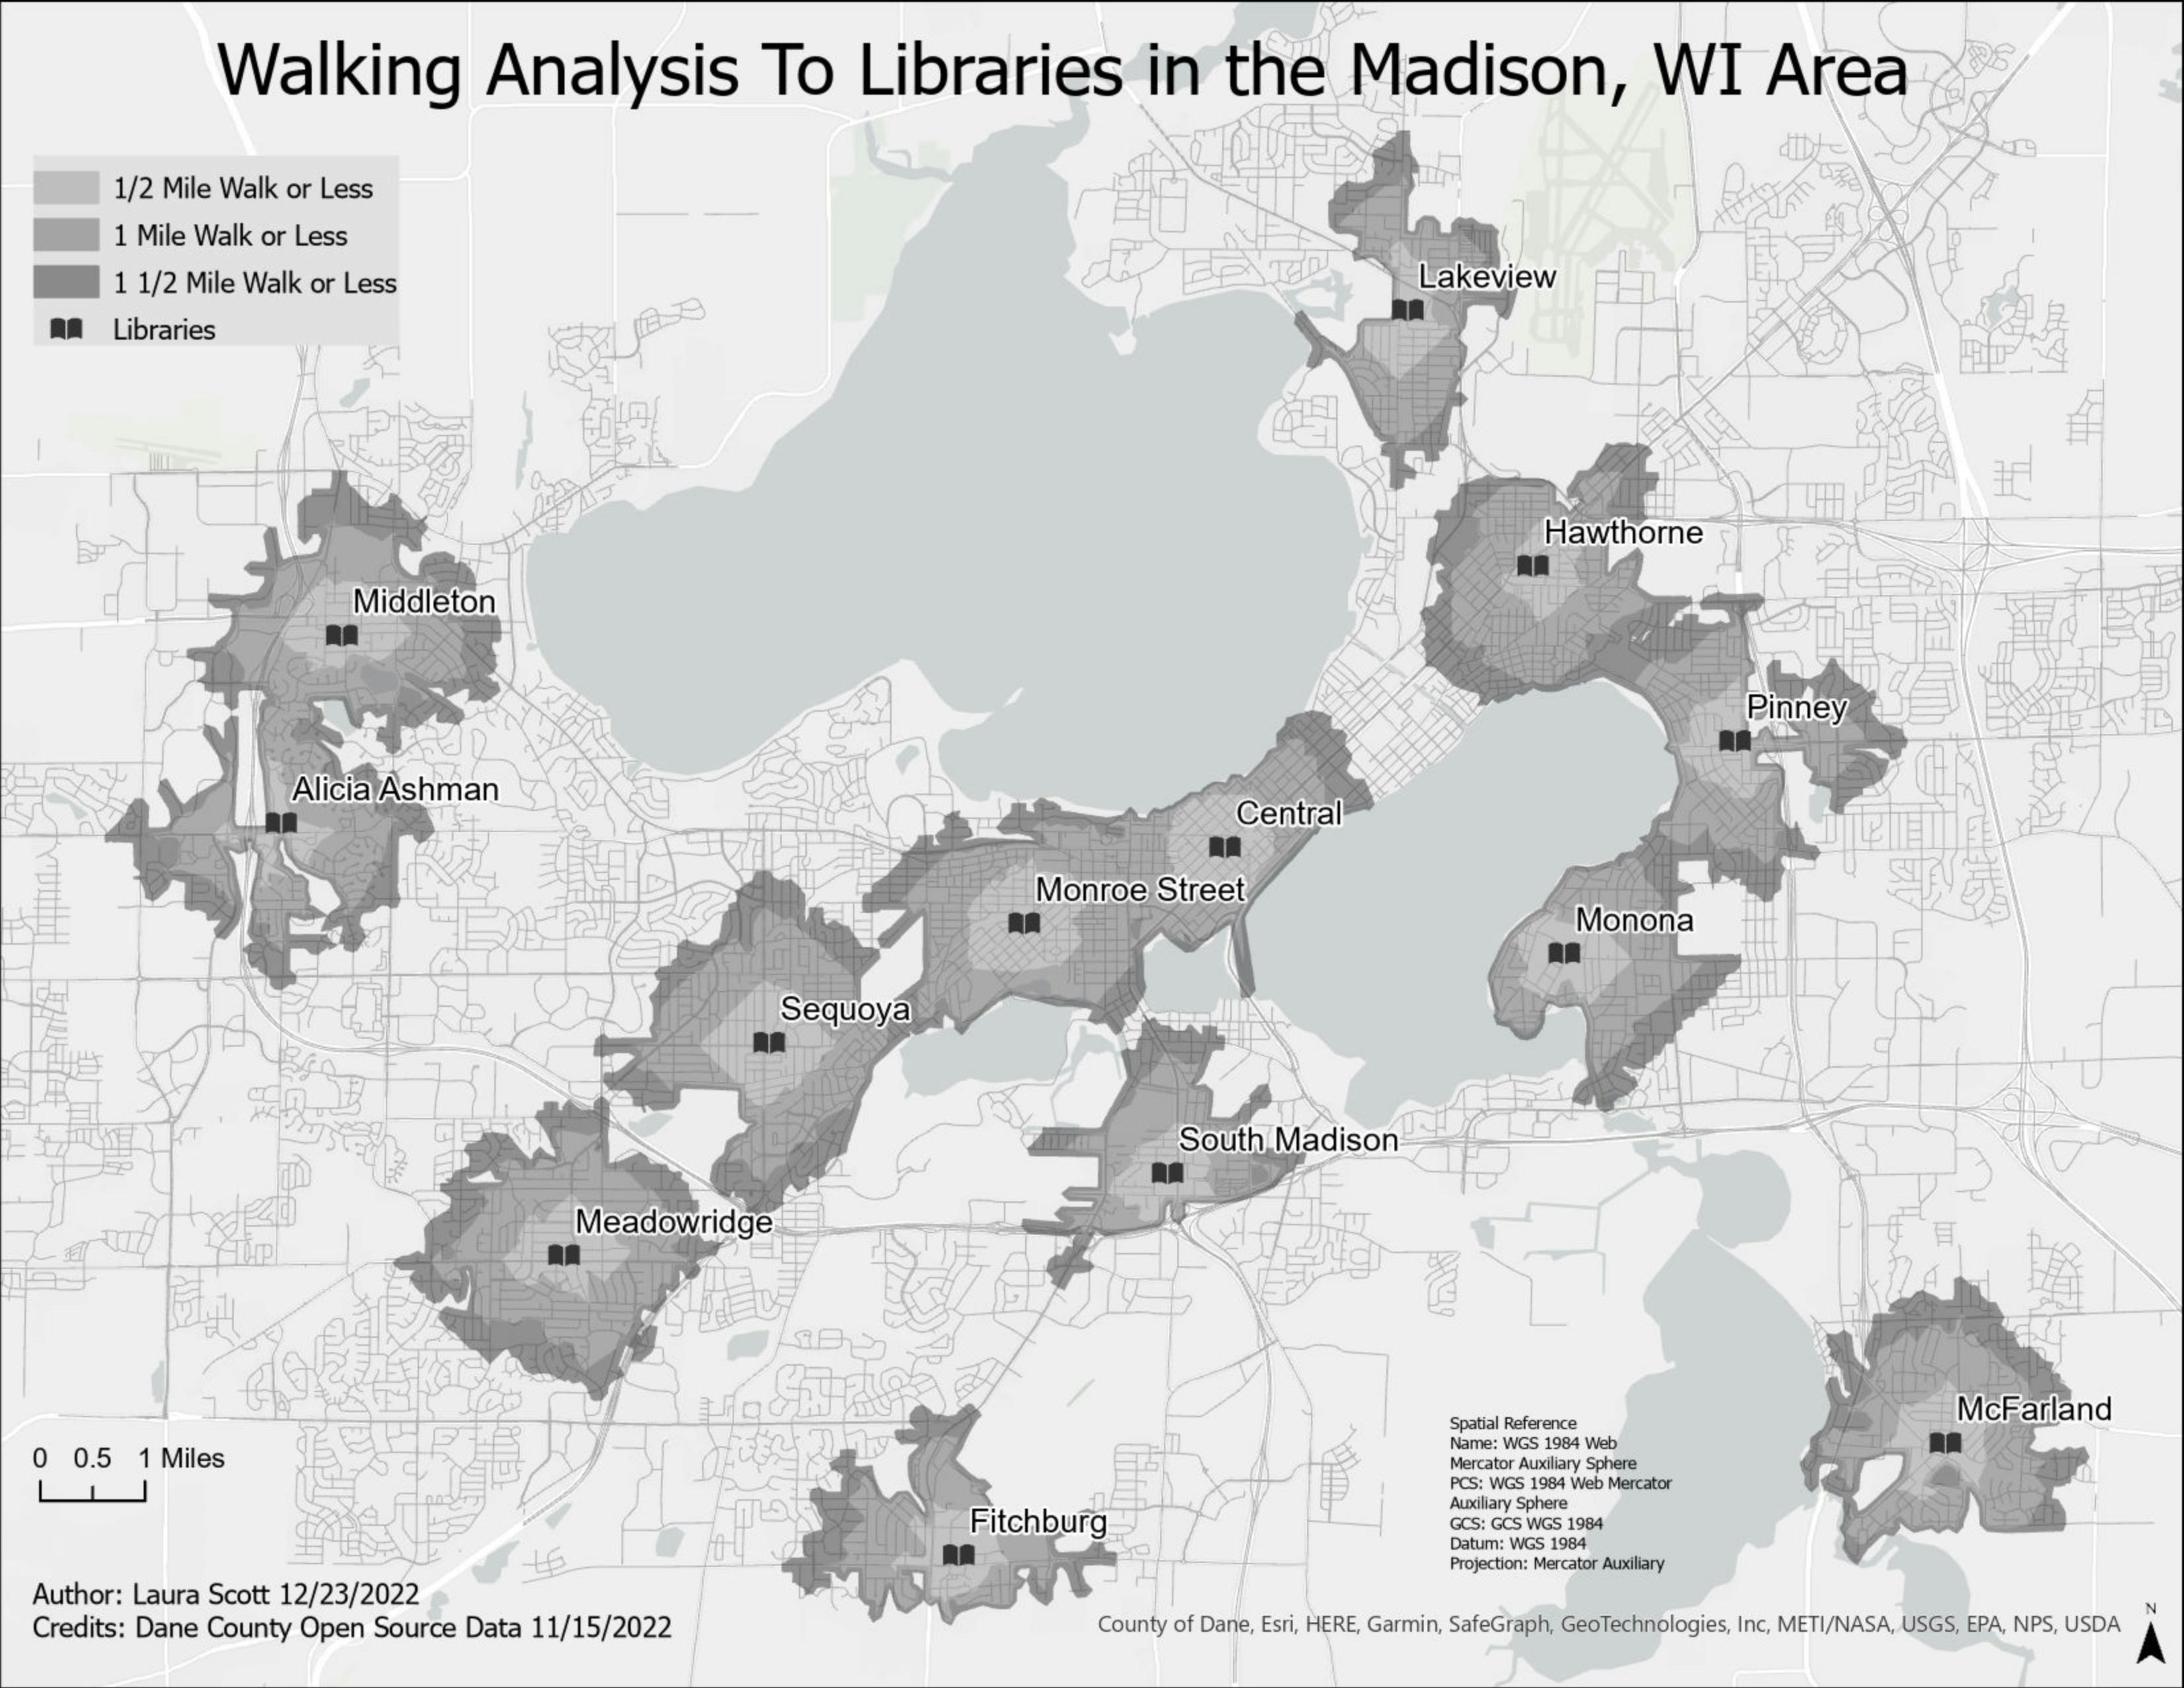 Walking Analysis to Libraries in Madison